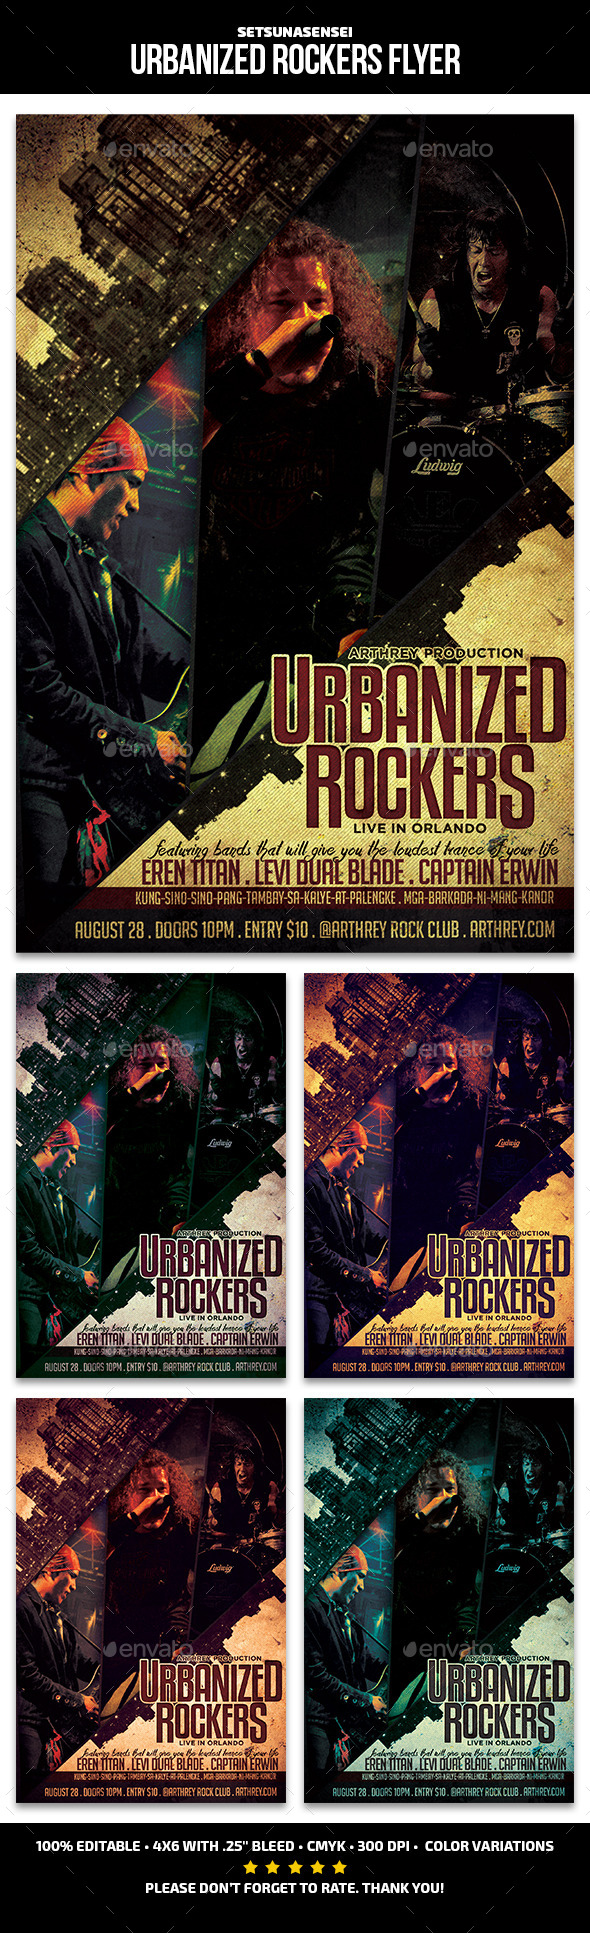 Urbanized Rockers Flyer